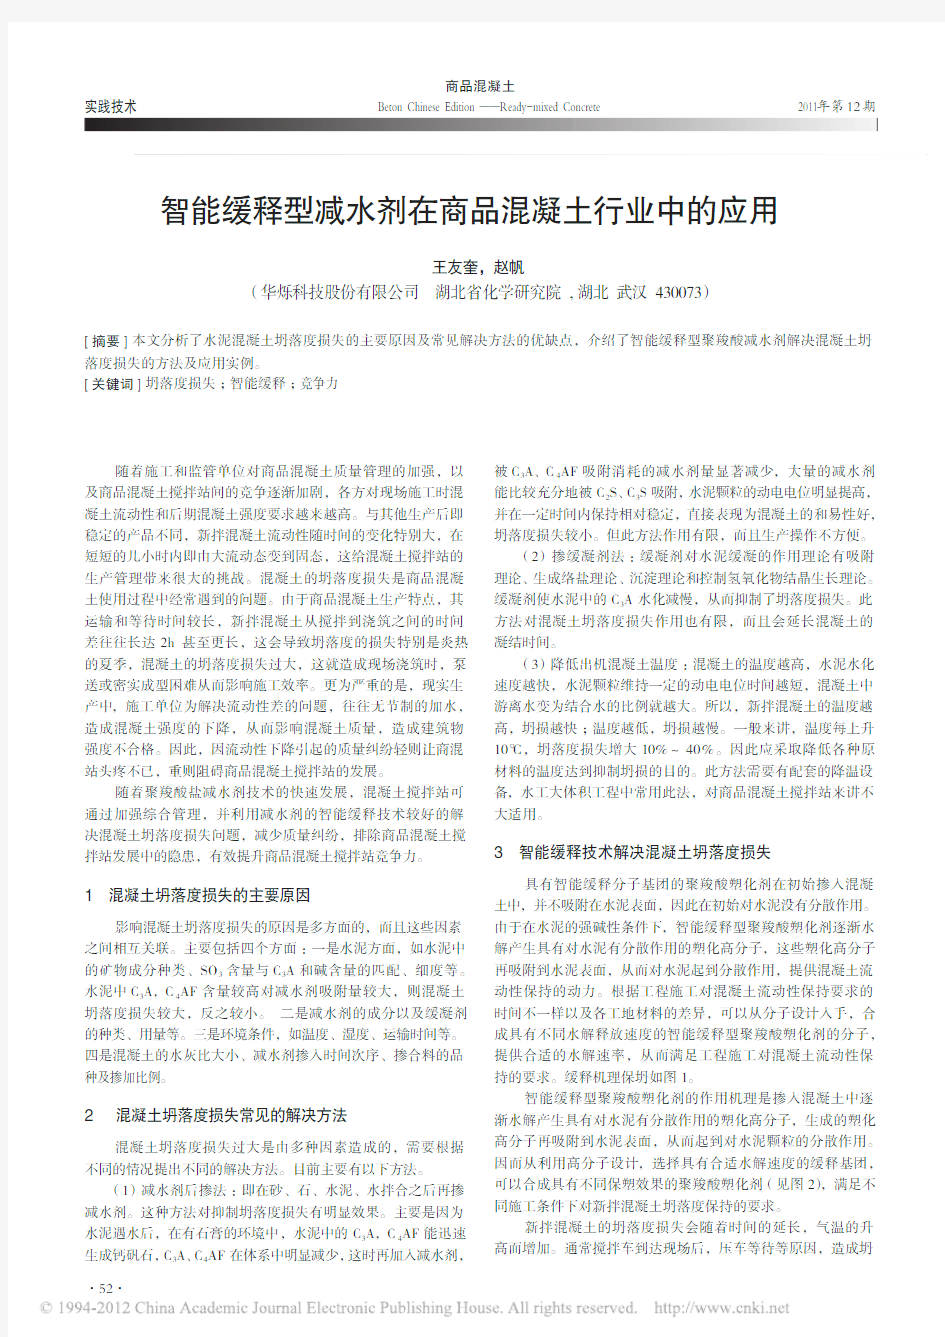 商品混凝土,2011,王友奎,智能缓释型减水剂在商品混凝土行业中的应用